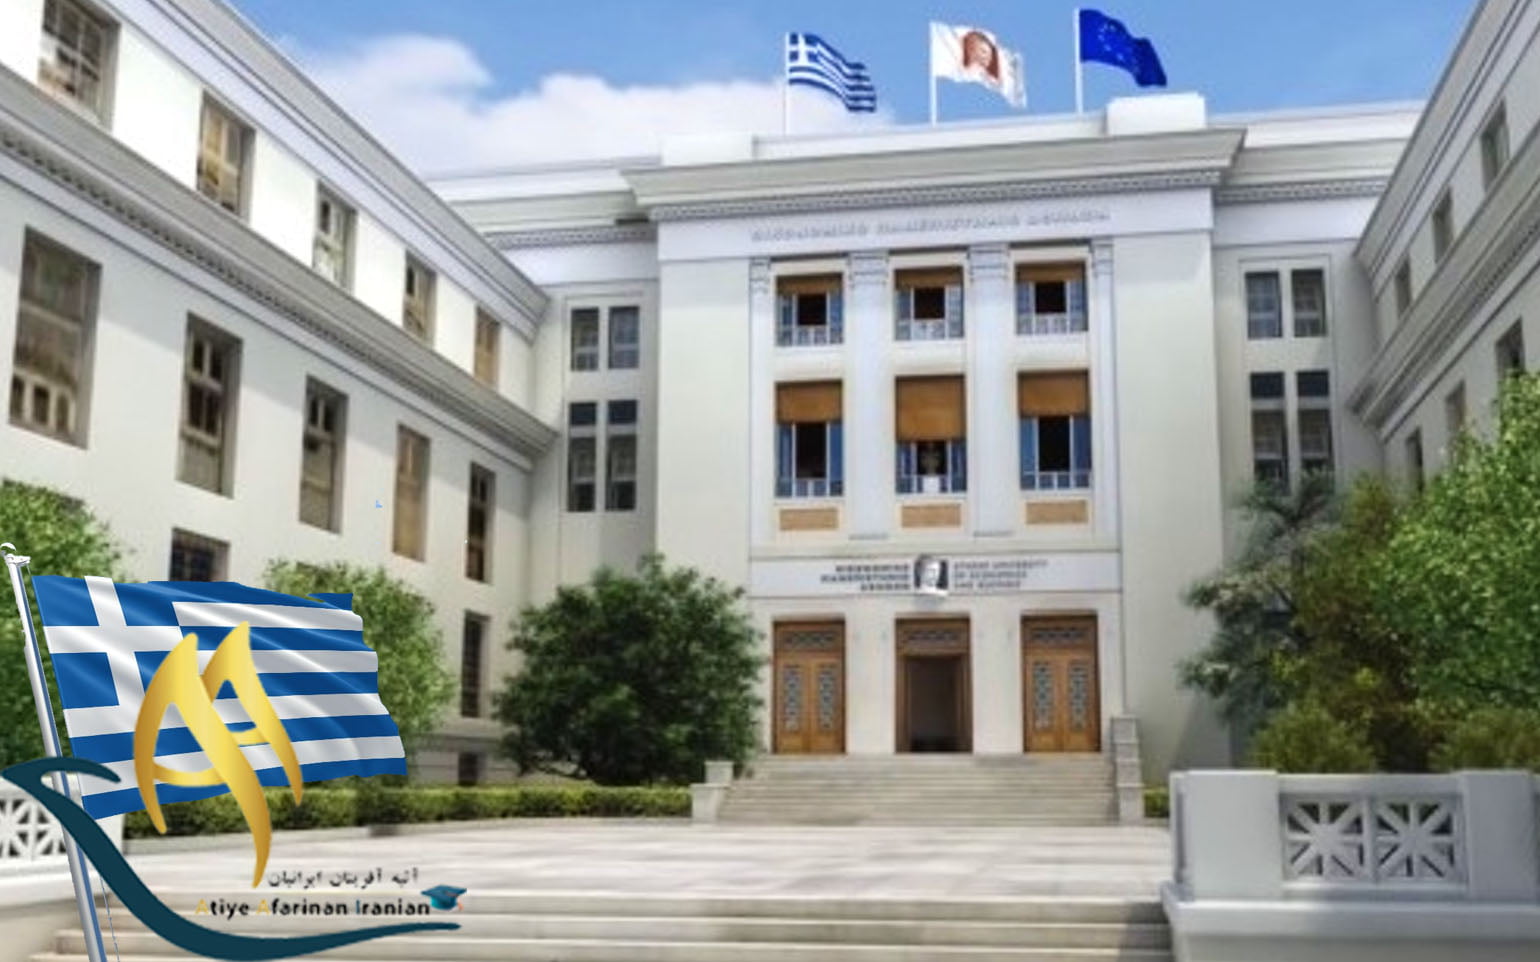 دانشگاه اقتصاد و بازرگانی آتن یونان